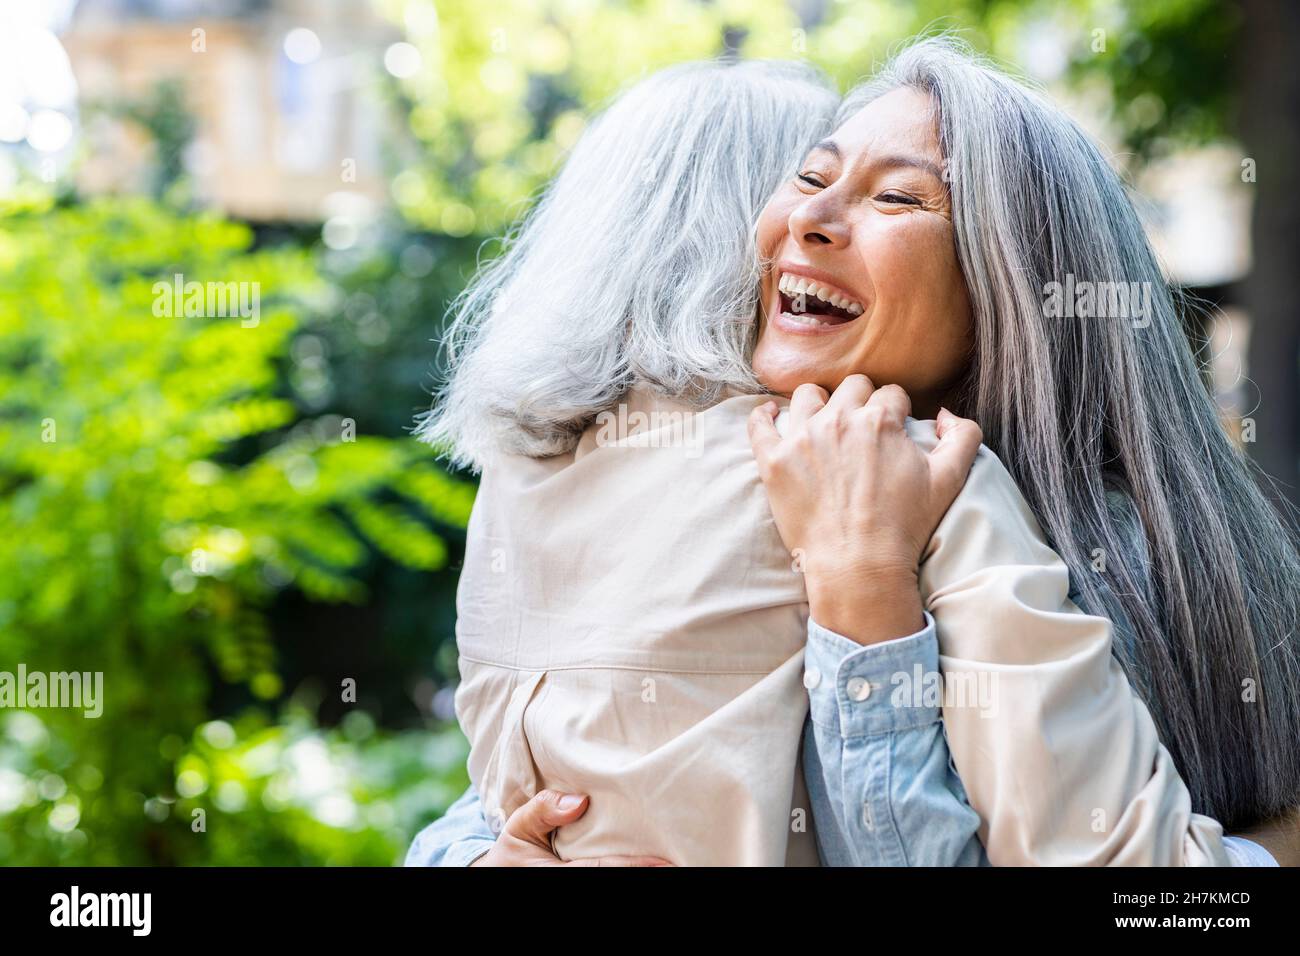 Les femmes matures rient tout en embrassant leur amie Banque D'Images